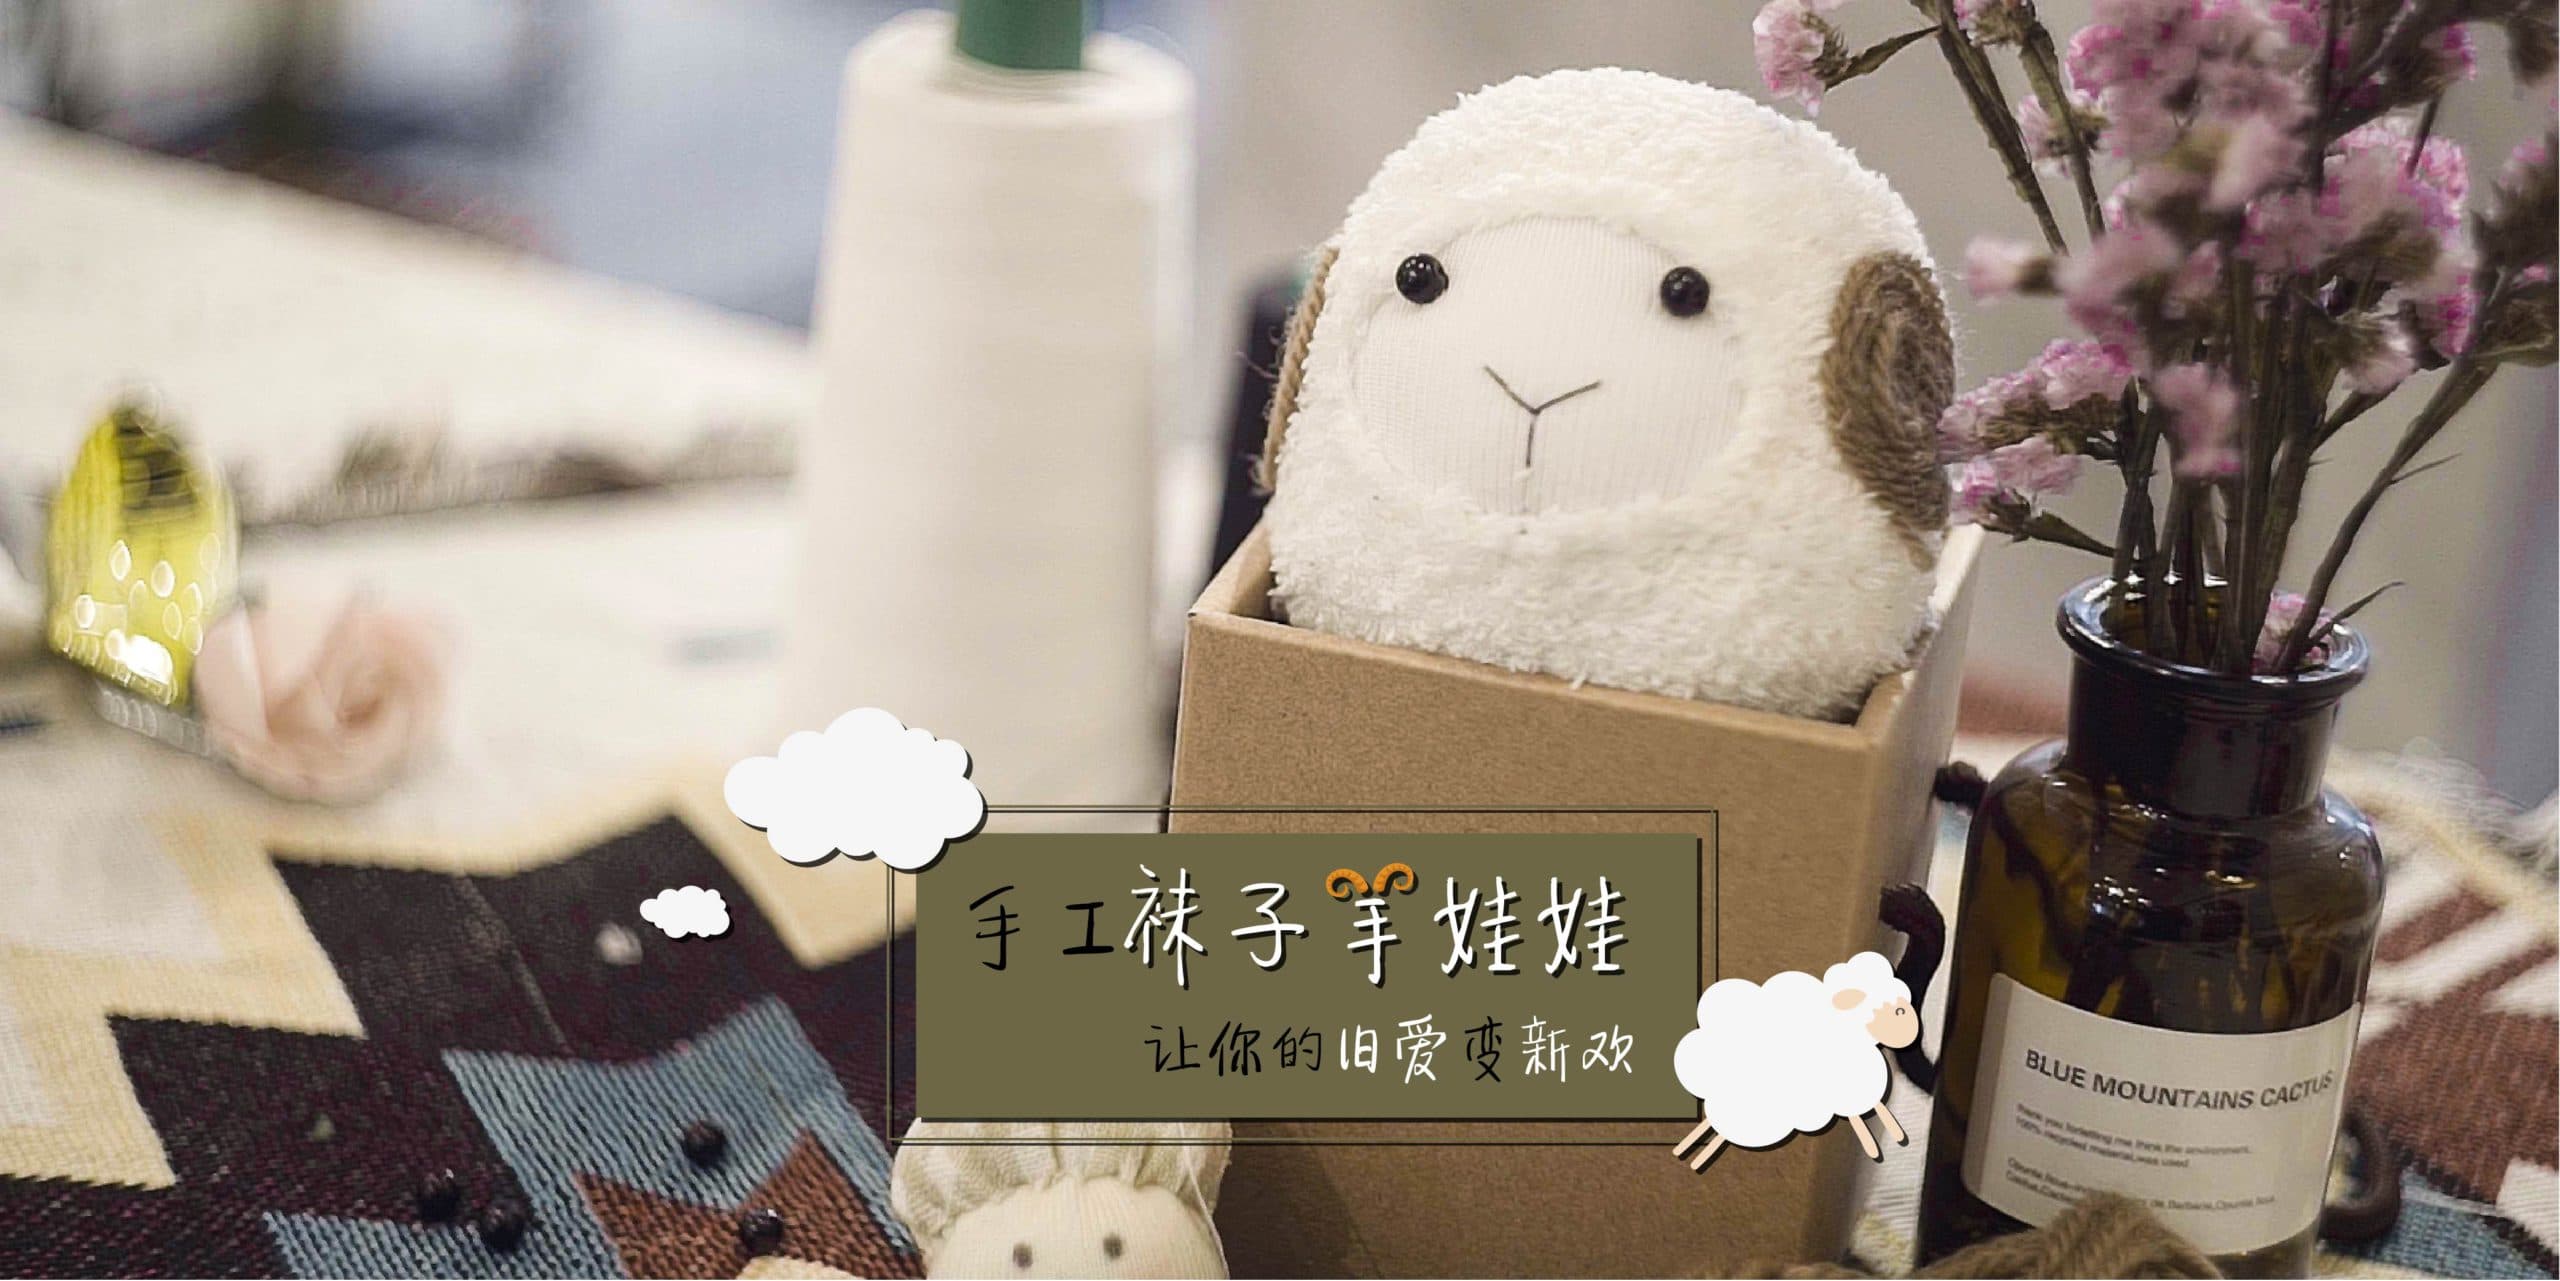 HandSewing Design Sheep Online Workshop (手工羊缝制网络课程)